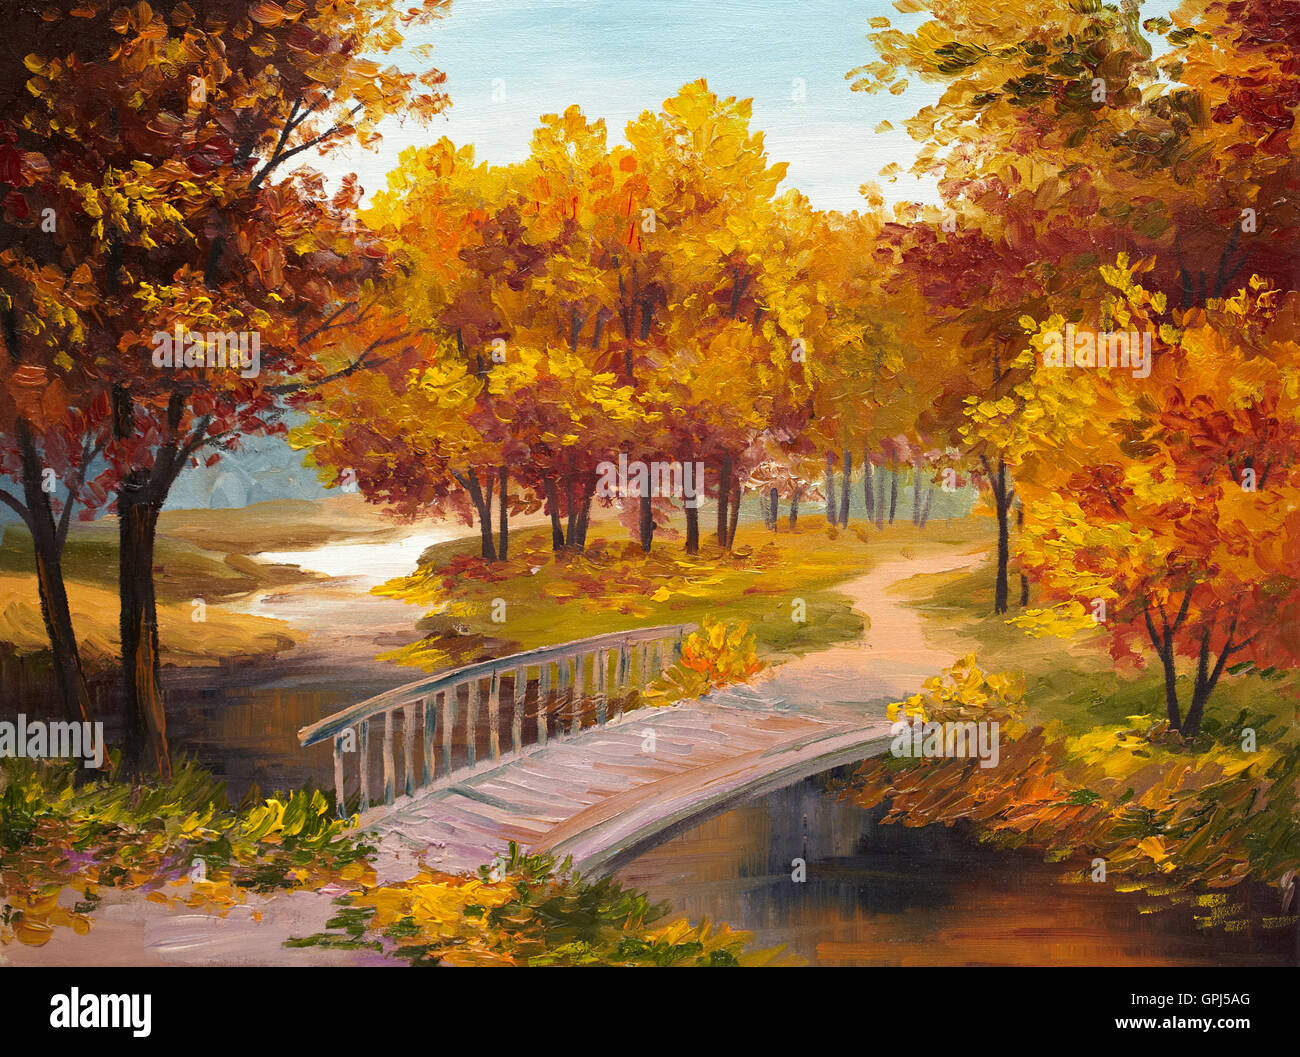 Peinture à l'huile - forêt d'automne avec une rivière et pont sur la rivière, feuilles rouge vif et coloré Banque D'Images